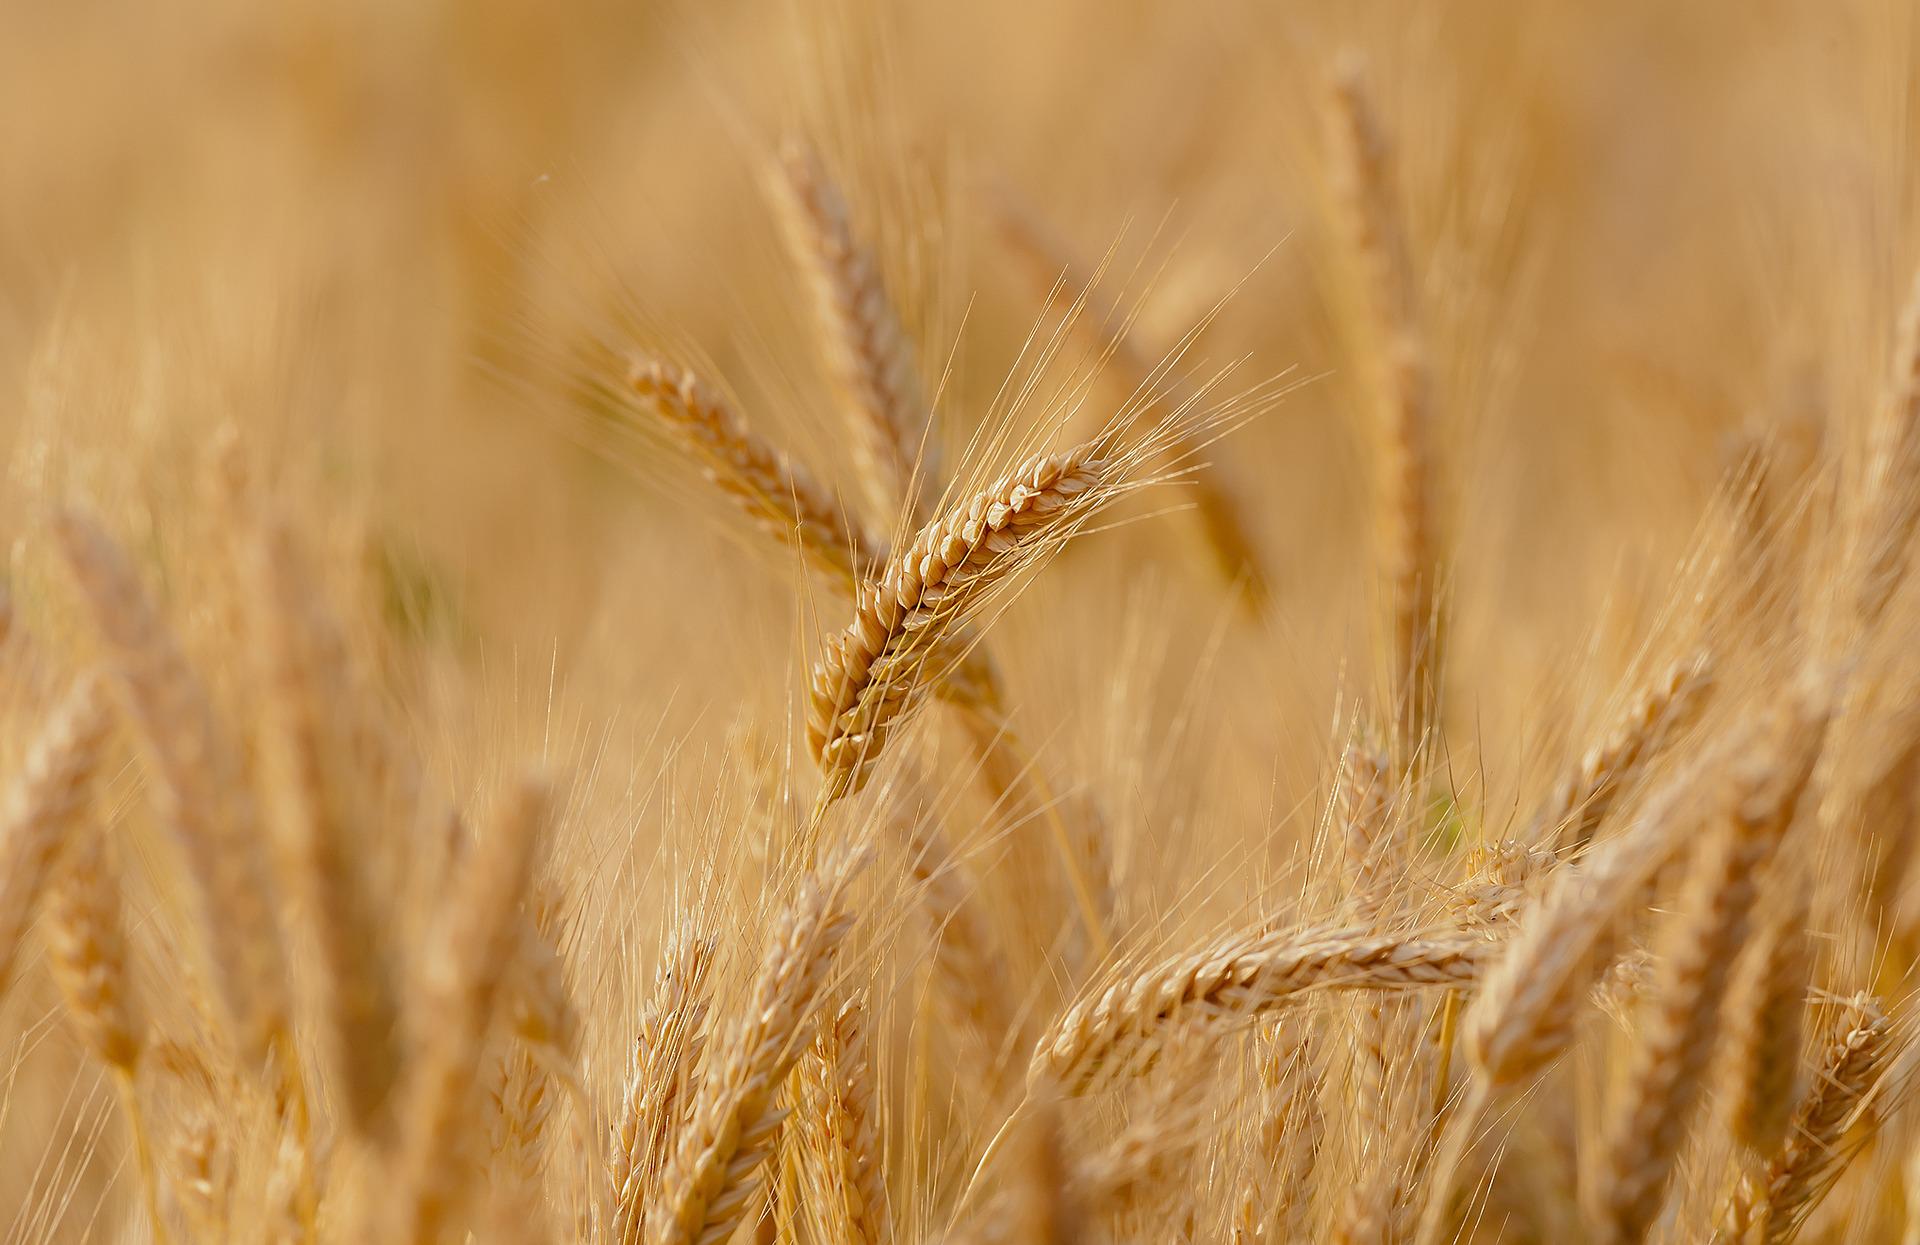 Trotz Regierungsmaßnahme wurden Getreideexporte aus Ungarn nicht gestoppt